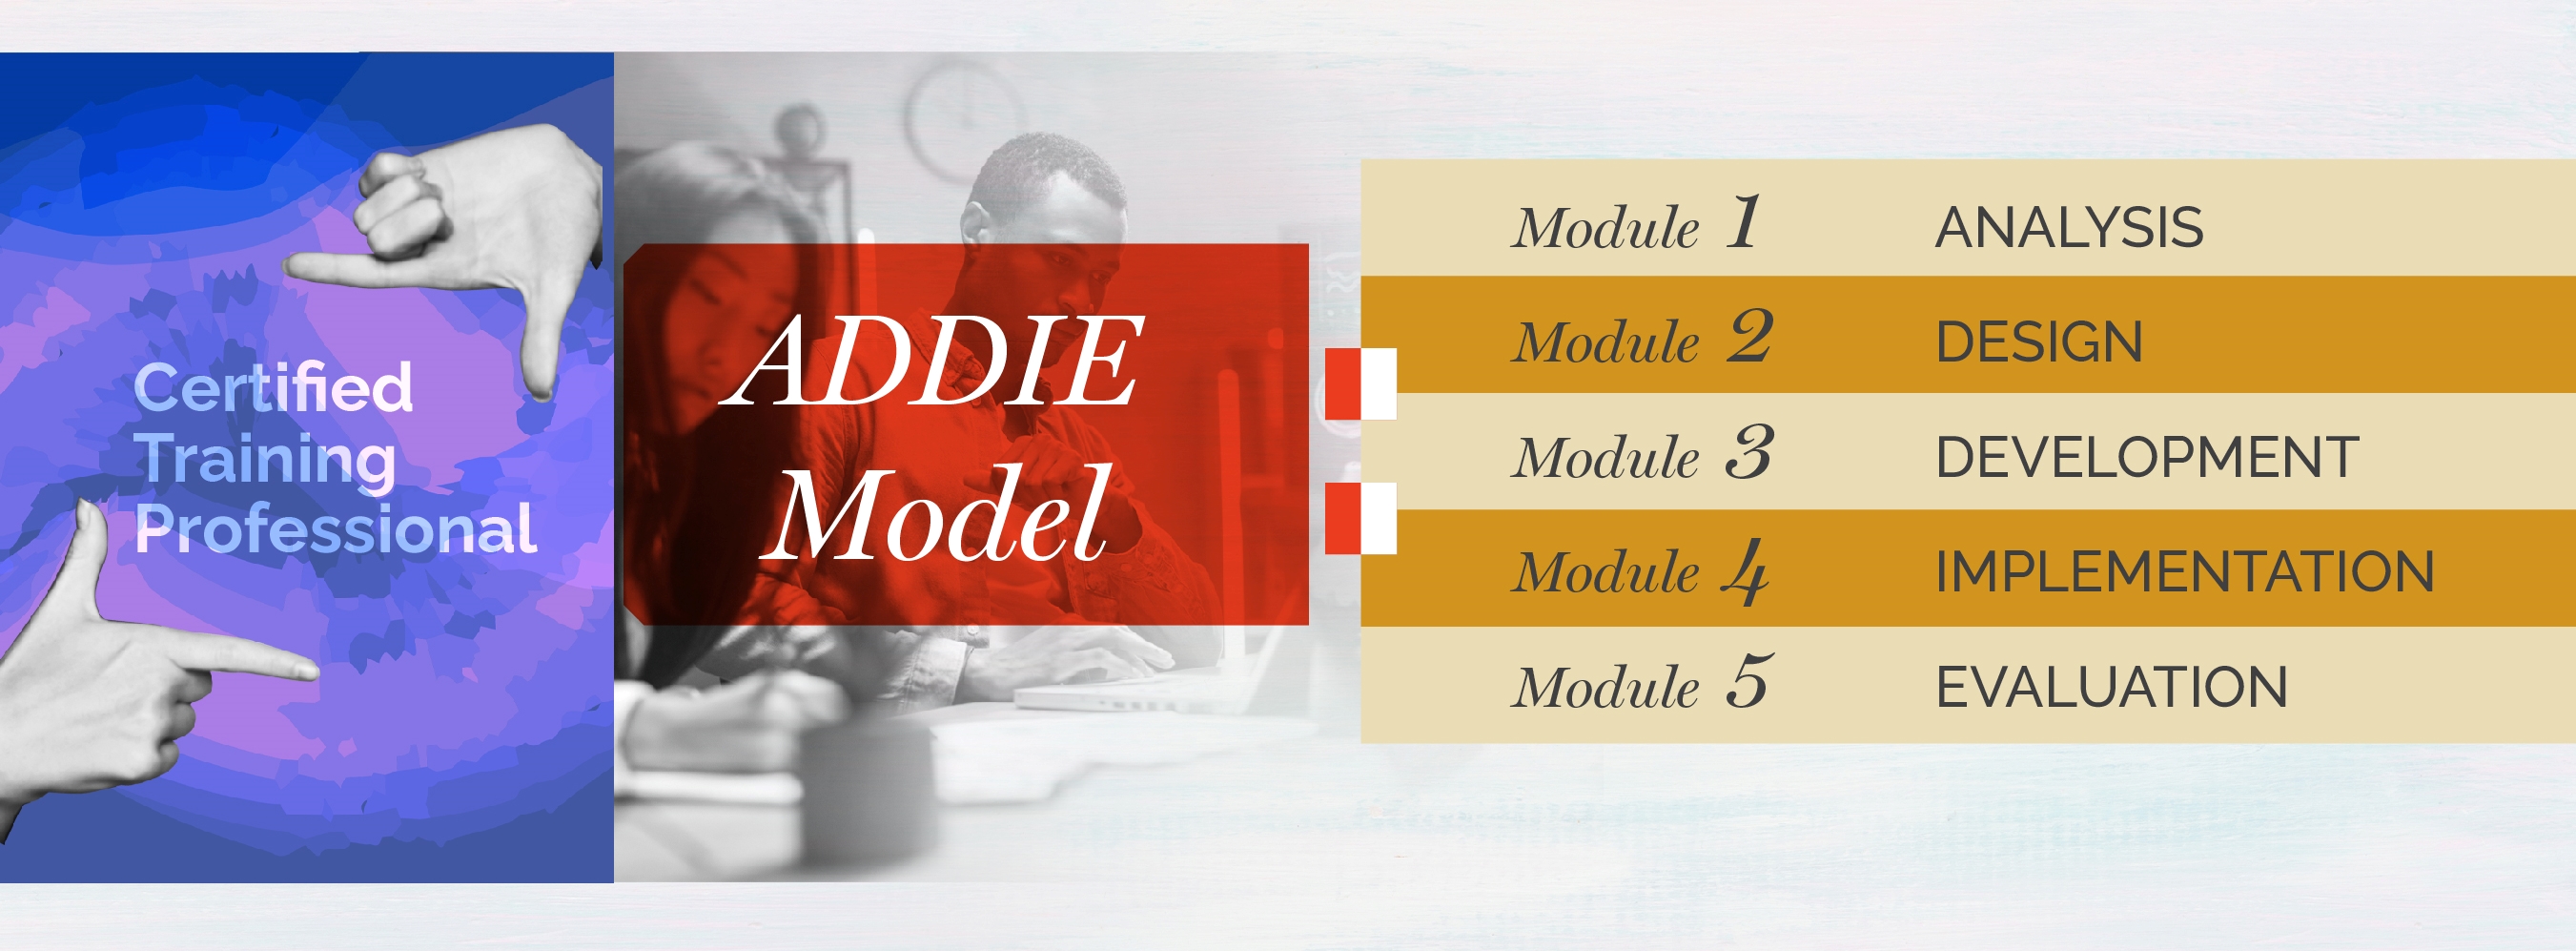 ADDIE Model